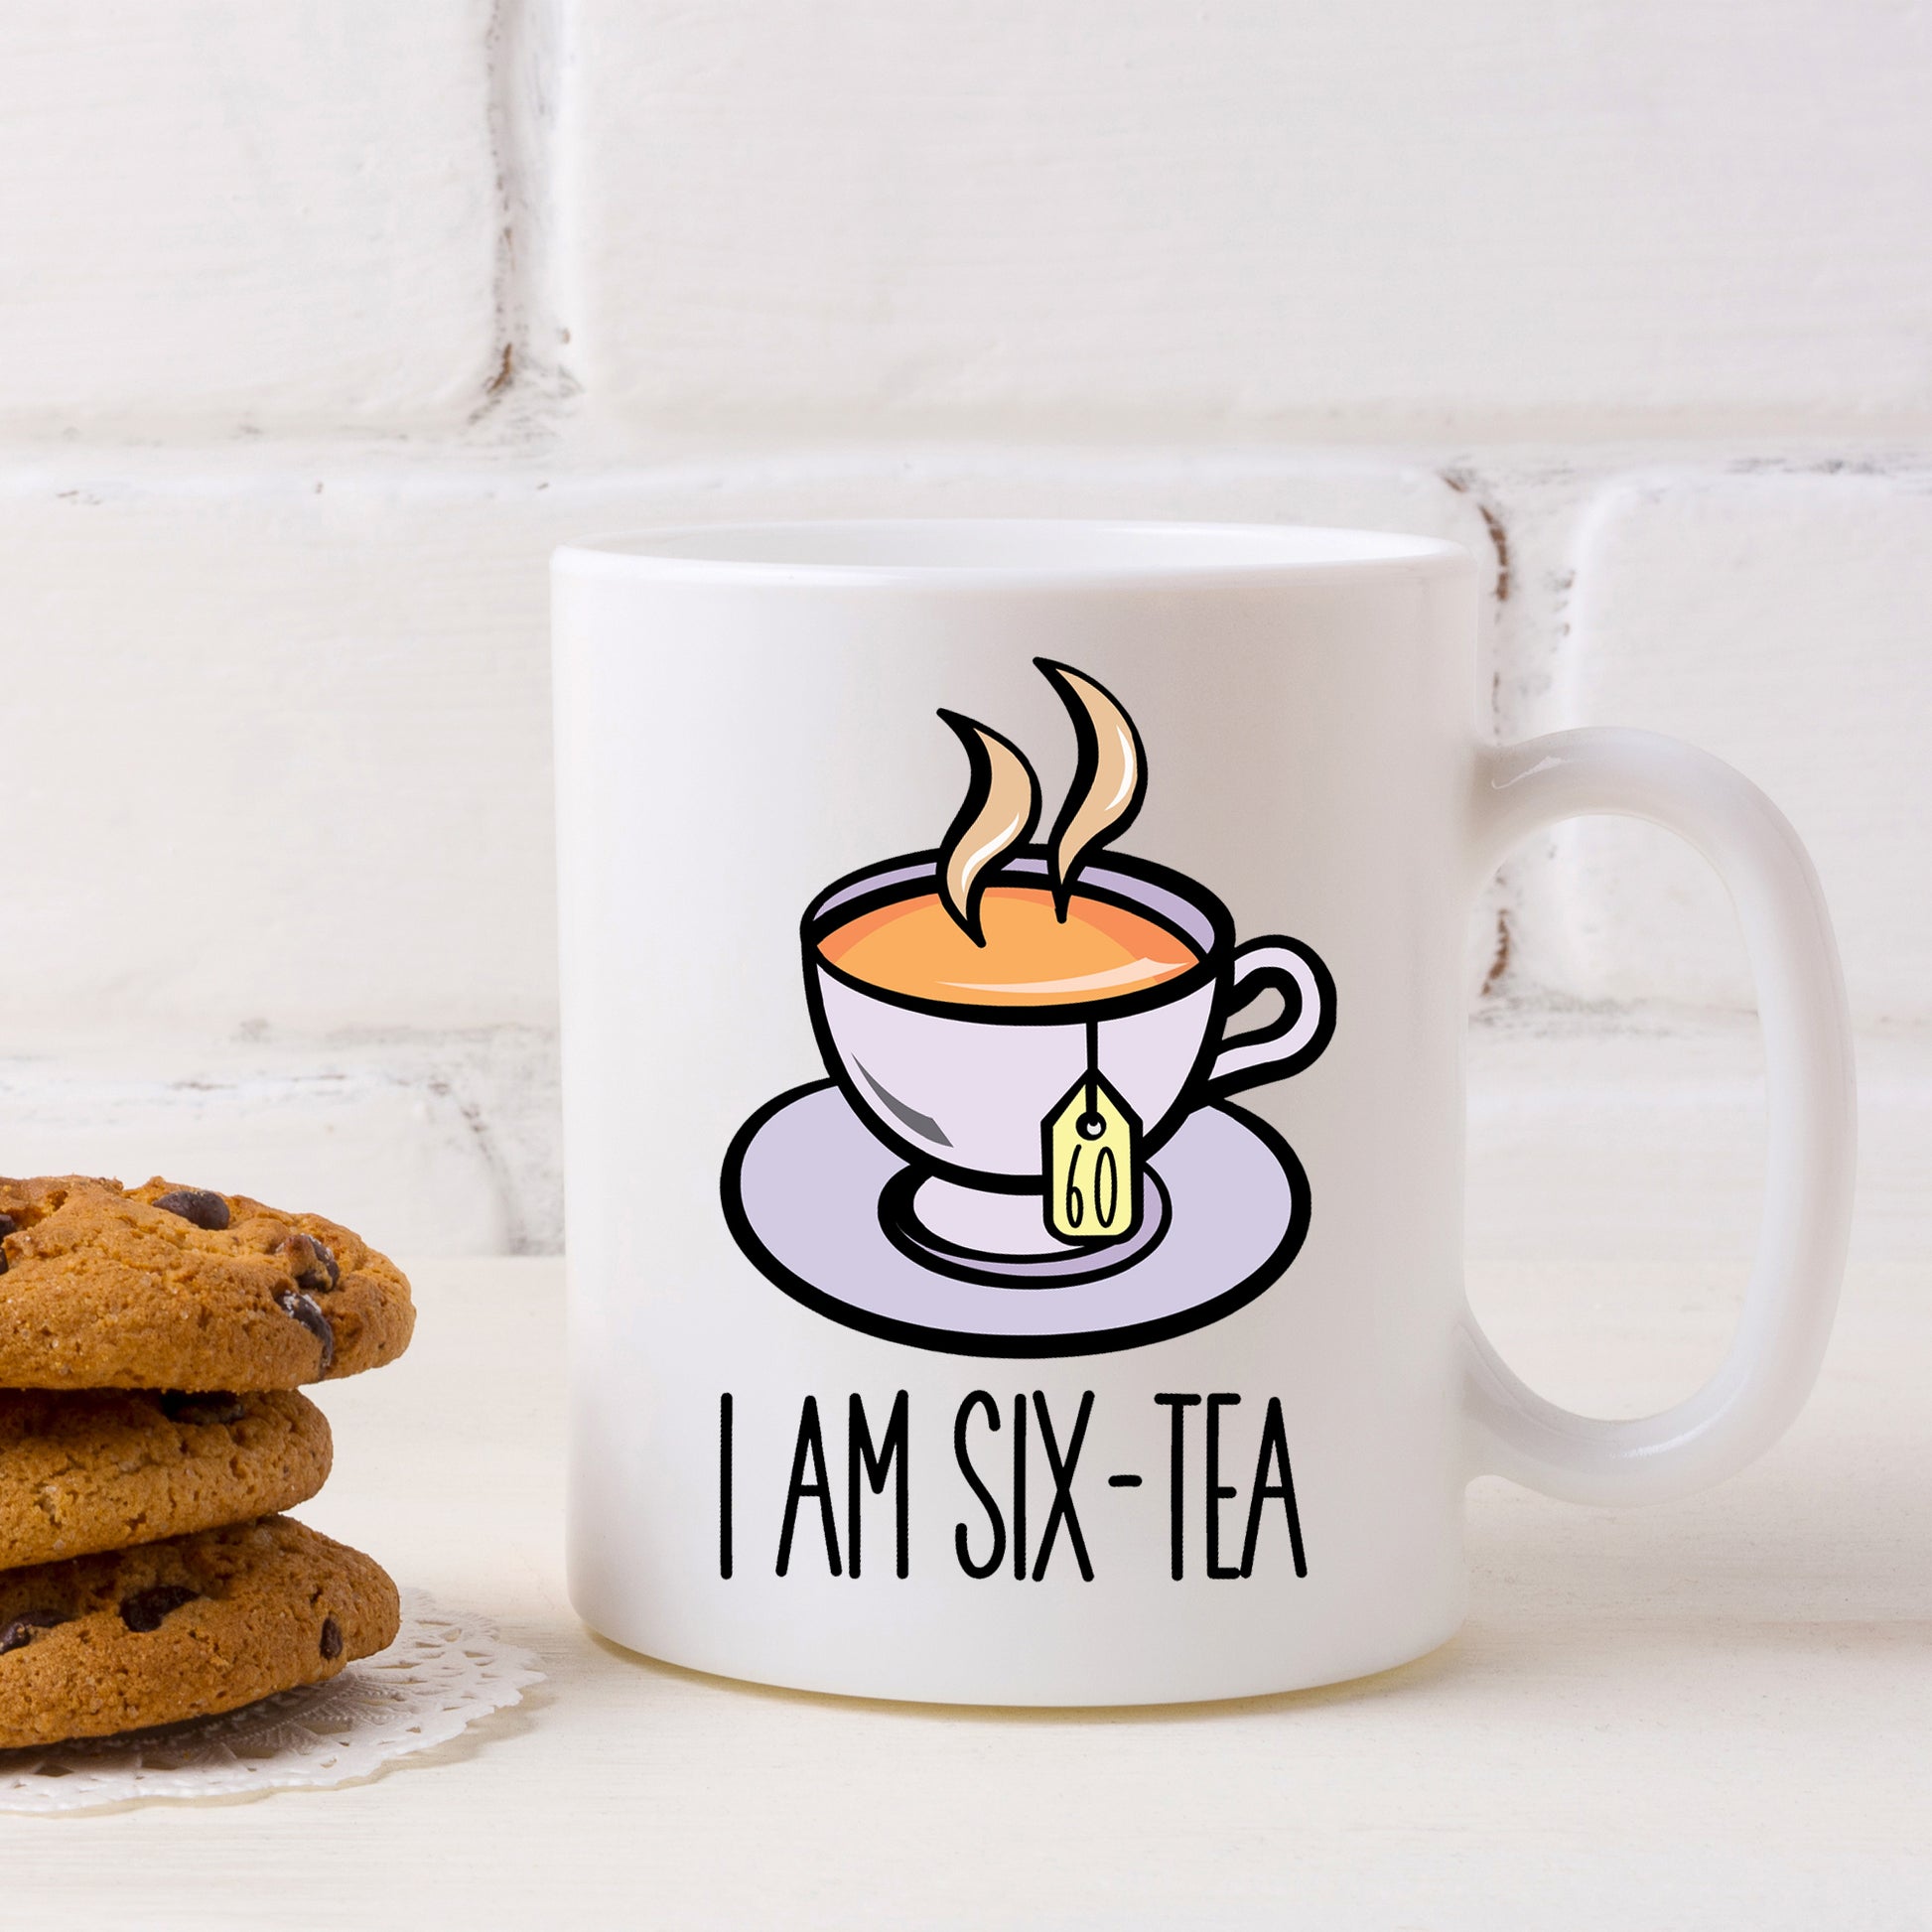 I Am Six-Tea Funny 60th Birthday Mug Gift for Tea Lovers  - Always Looking Good -   